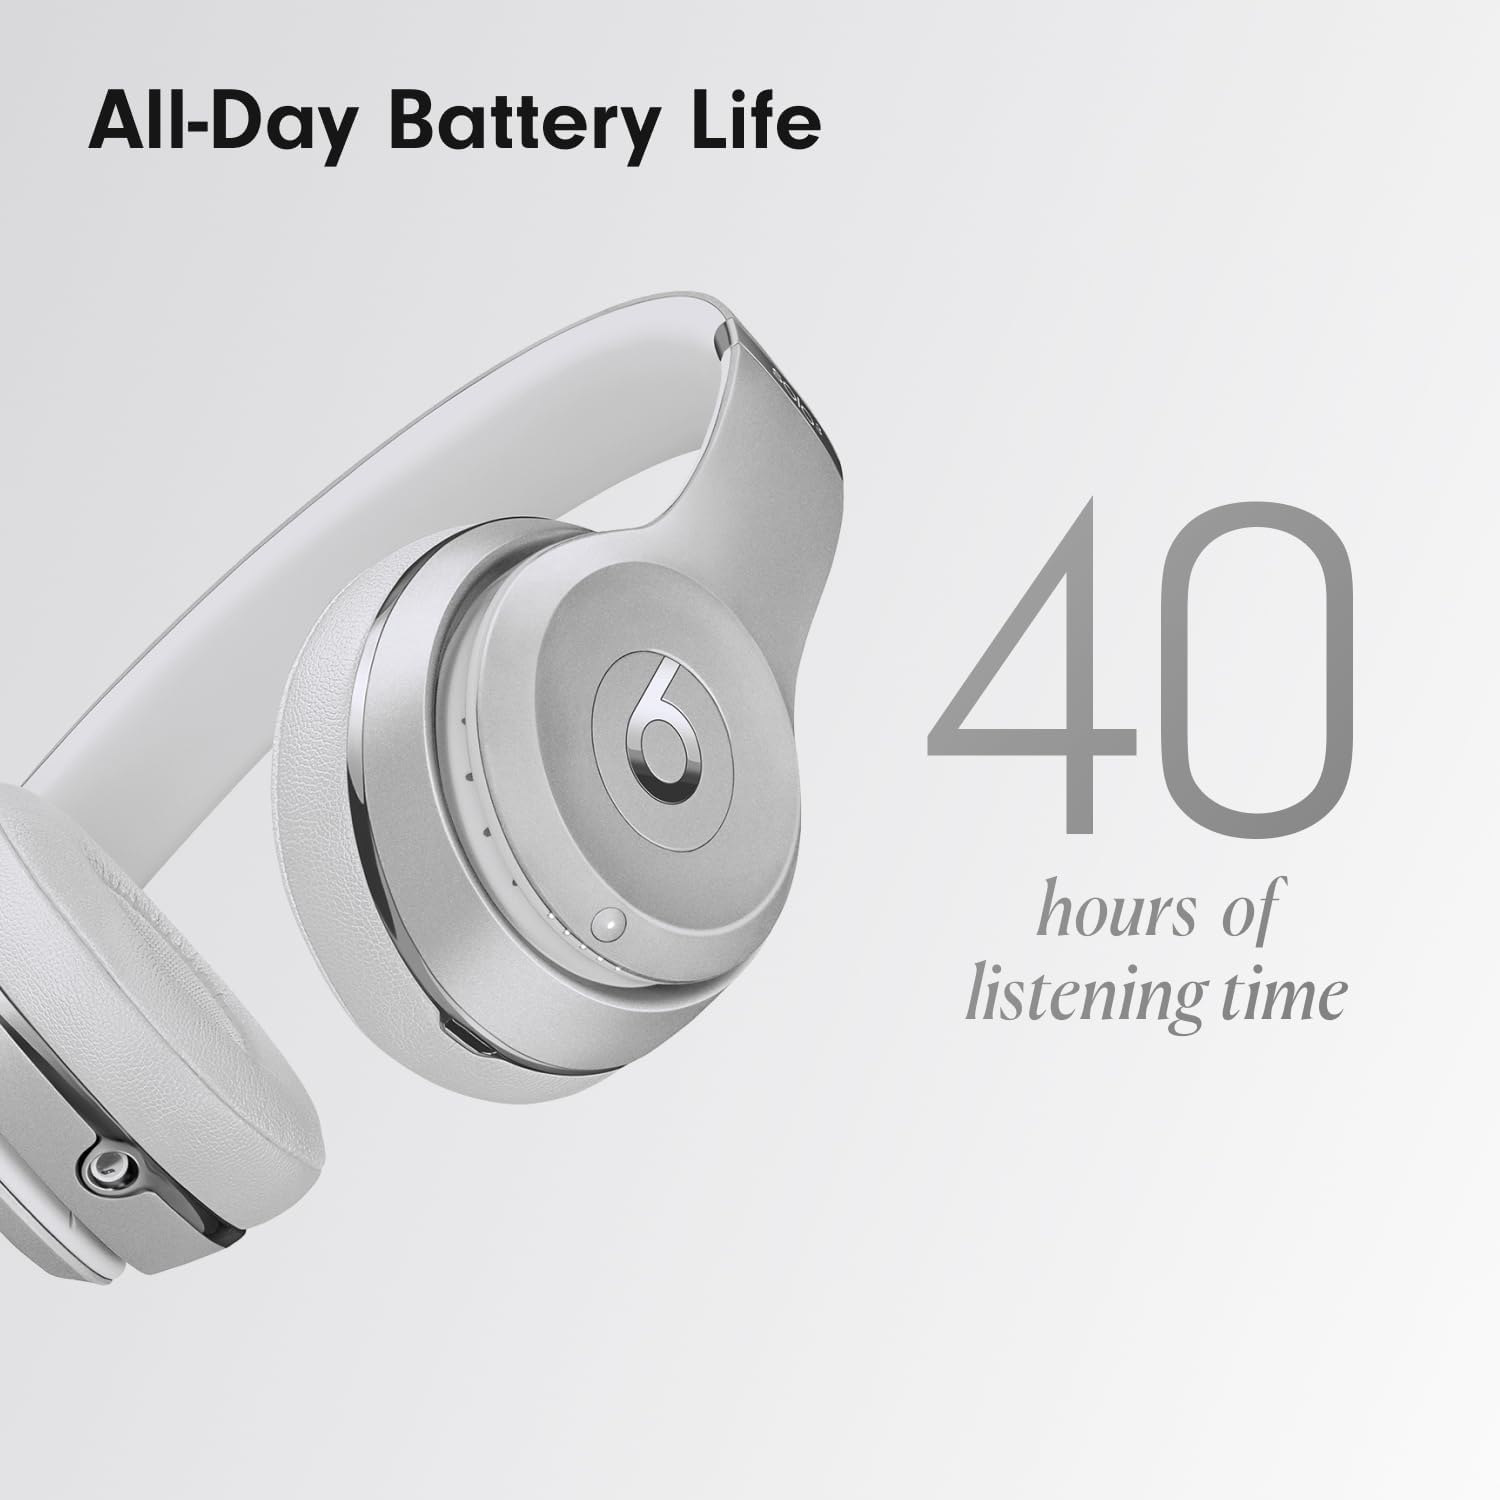 Beats Solo3 Wireless On-Ear Headphones - Silver (Latest Model)